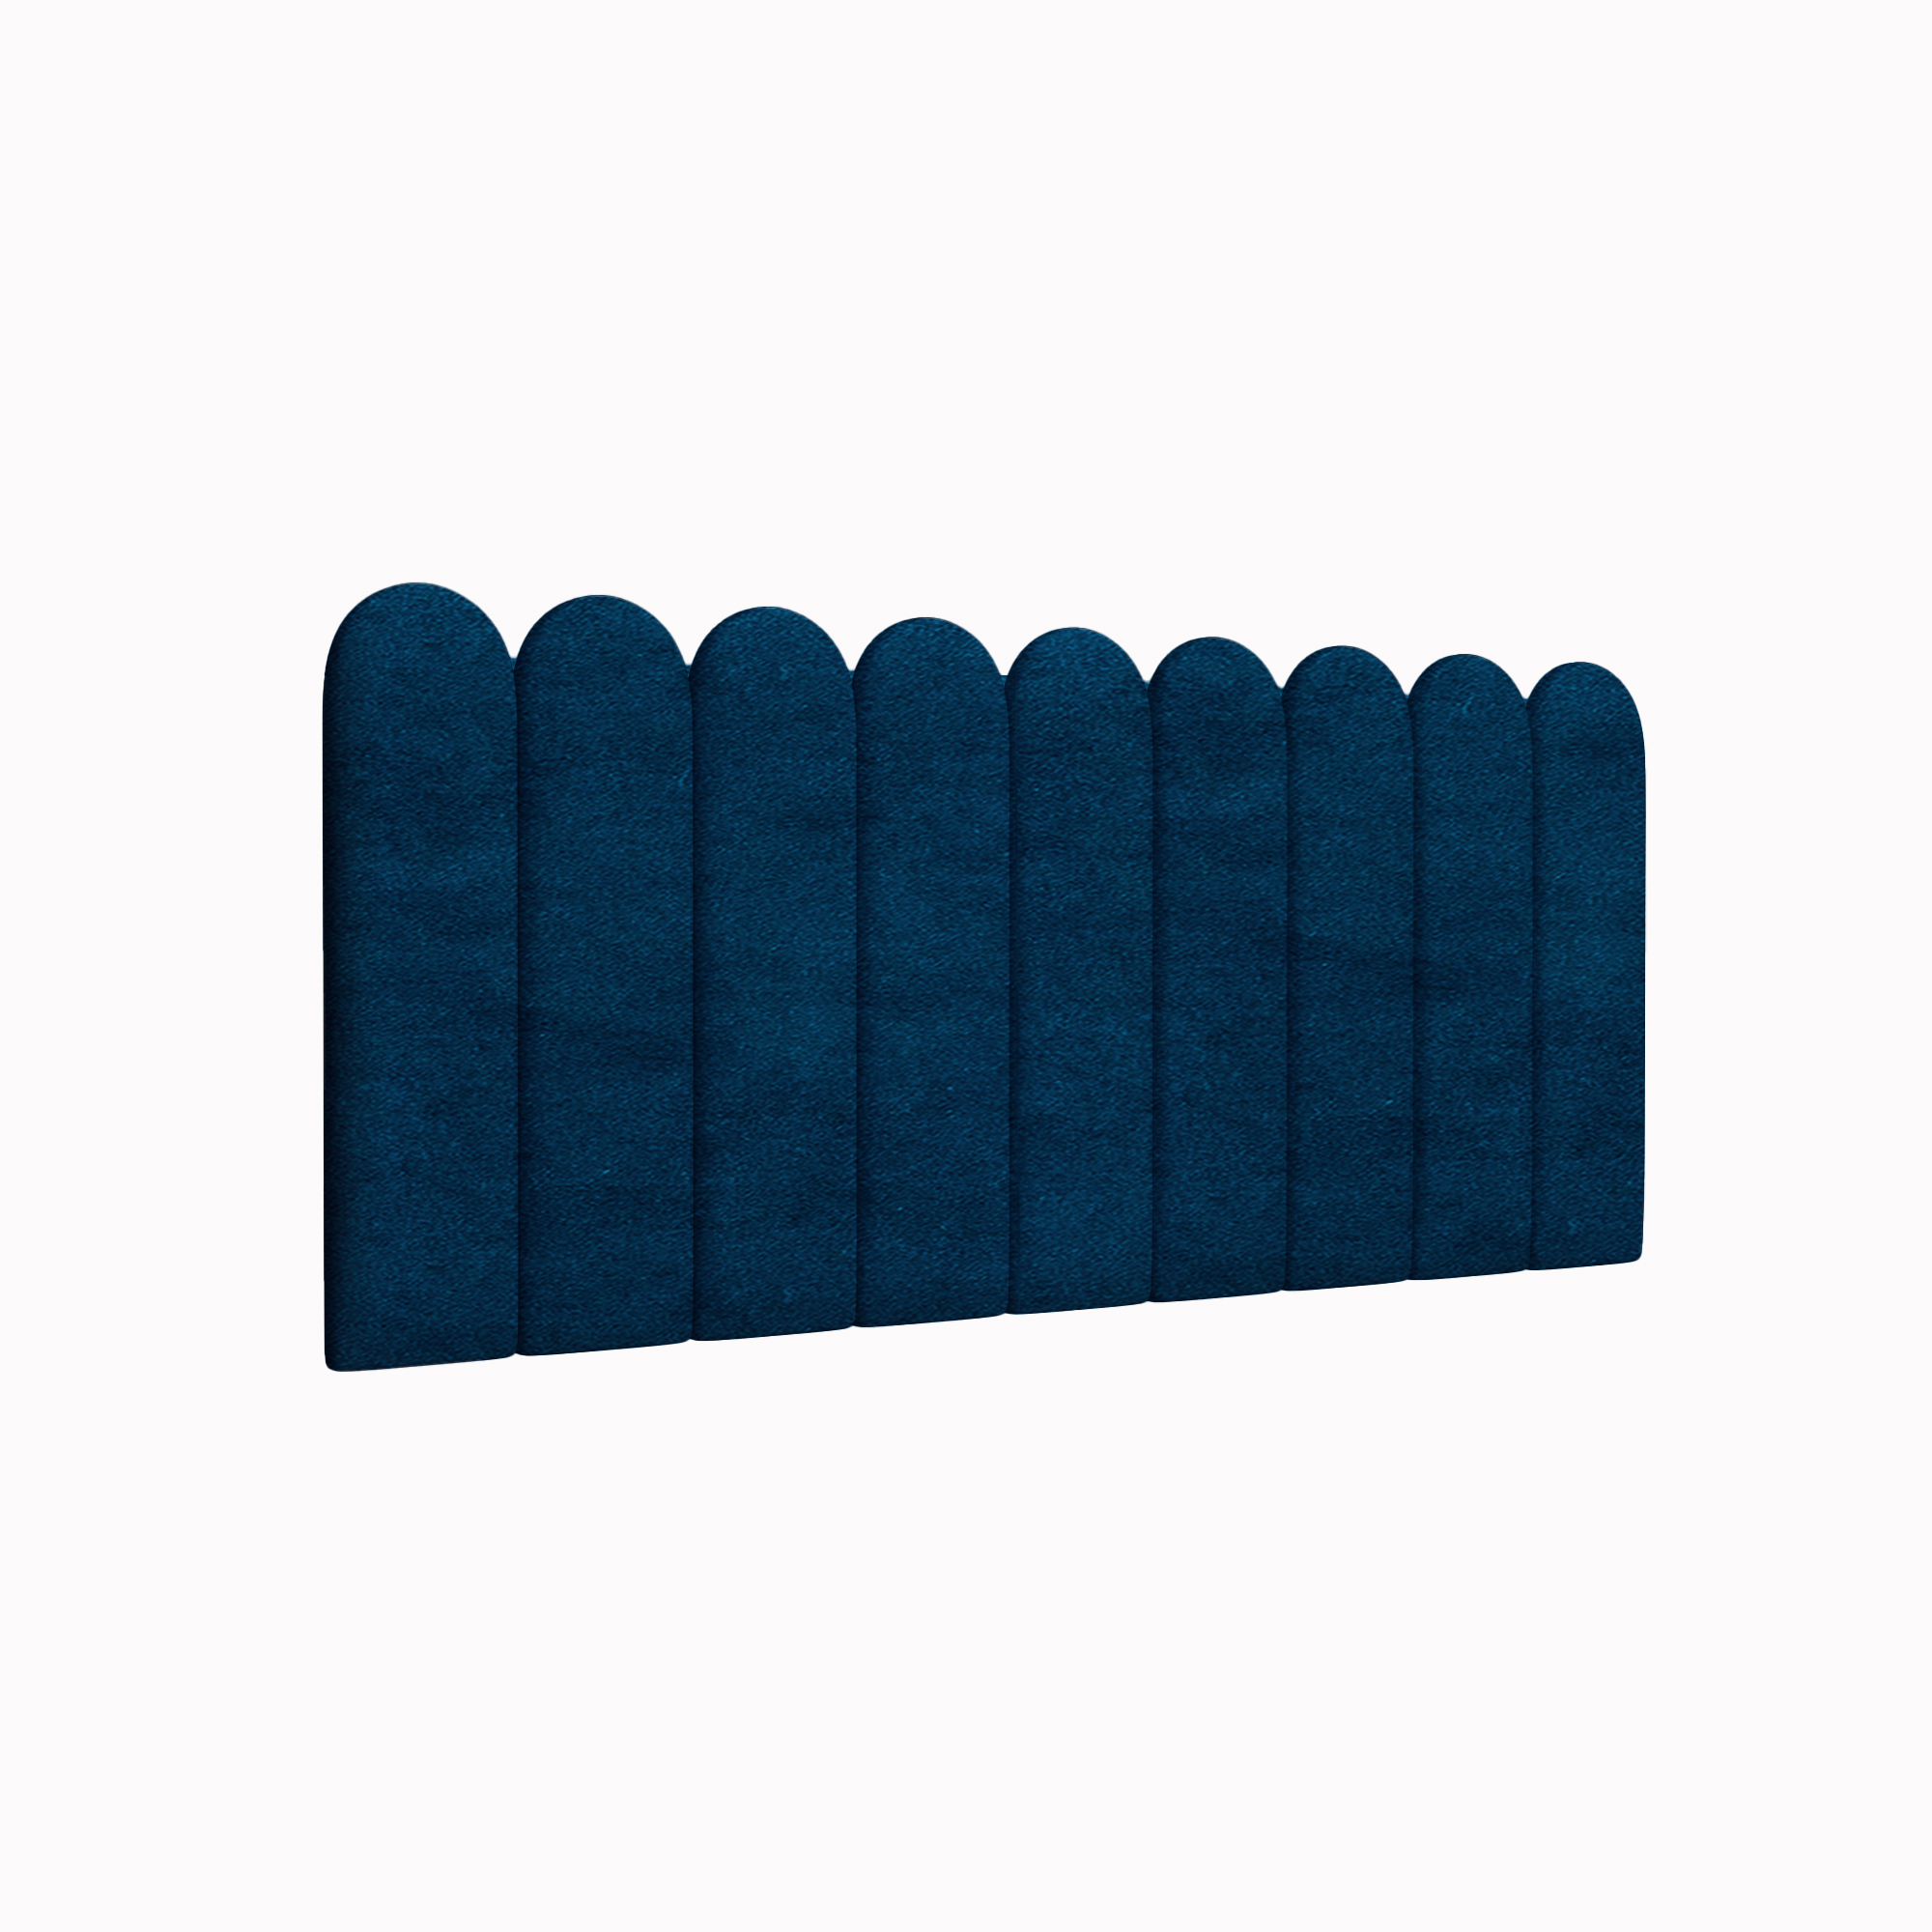 Мягкие стены детской Velour Blue 15х60R см 4 шт. мягкие кубики плюшики весёлая азбука